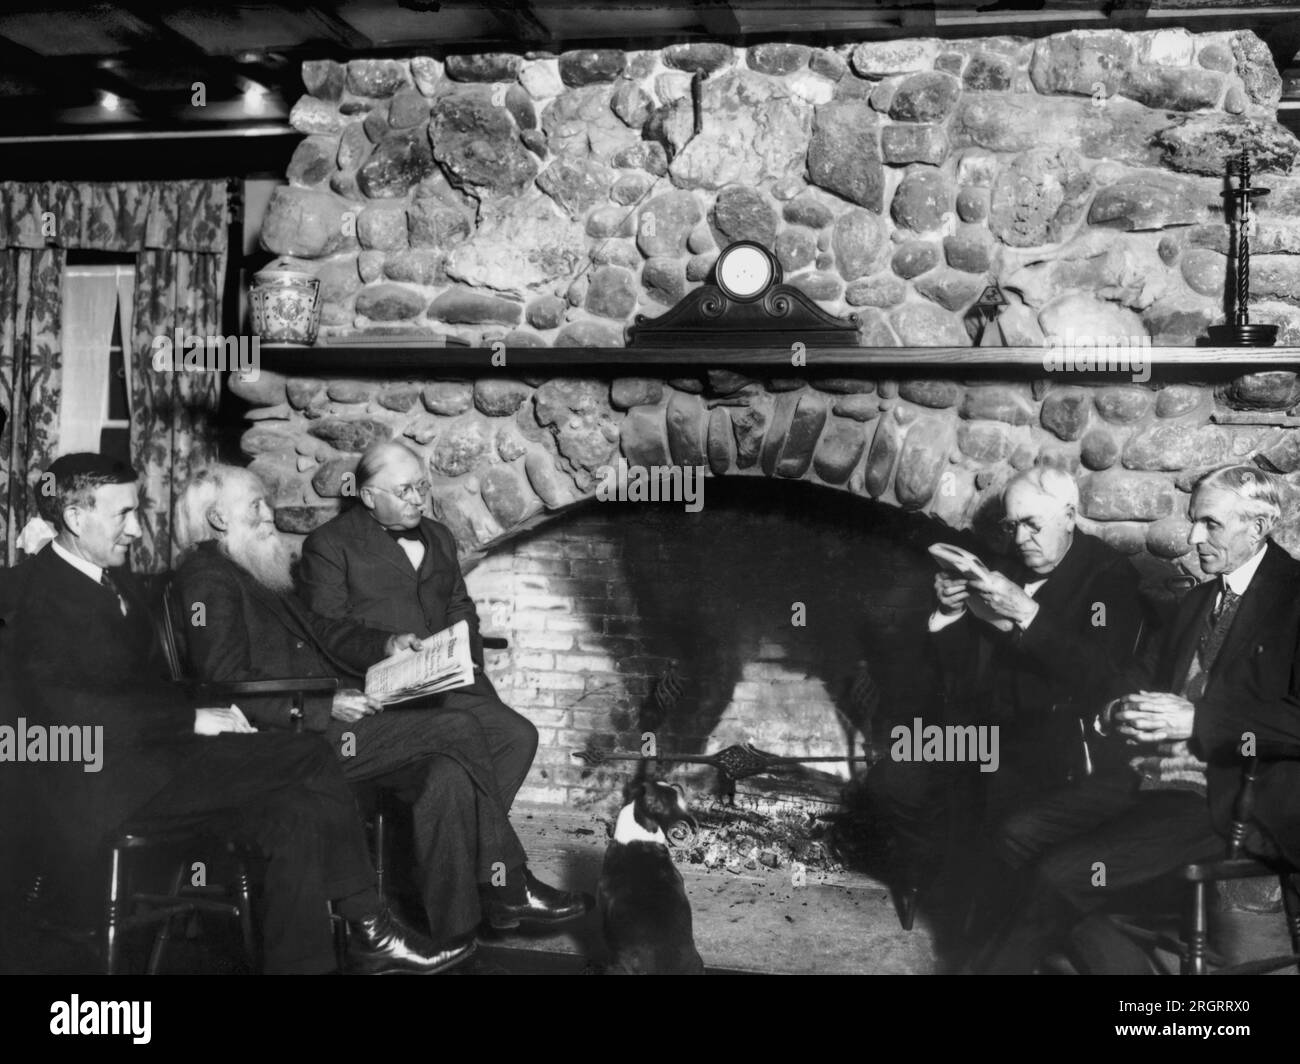 Napanoch, New York: c. 1920 i famosi quattro che visitano lo Yama Farms Inn a The Catskills. Da sinistra a destra, Harvey Firestone, John Burroughs, il proprietario Frank Seaman, Thomas Edison, e Henry Ford. L'orologio sul mantello non ha mani o ore. Foto Stock